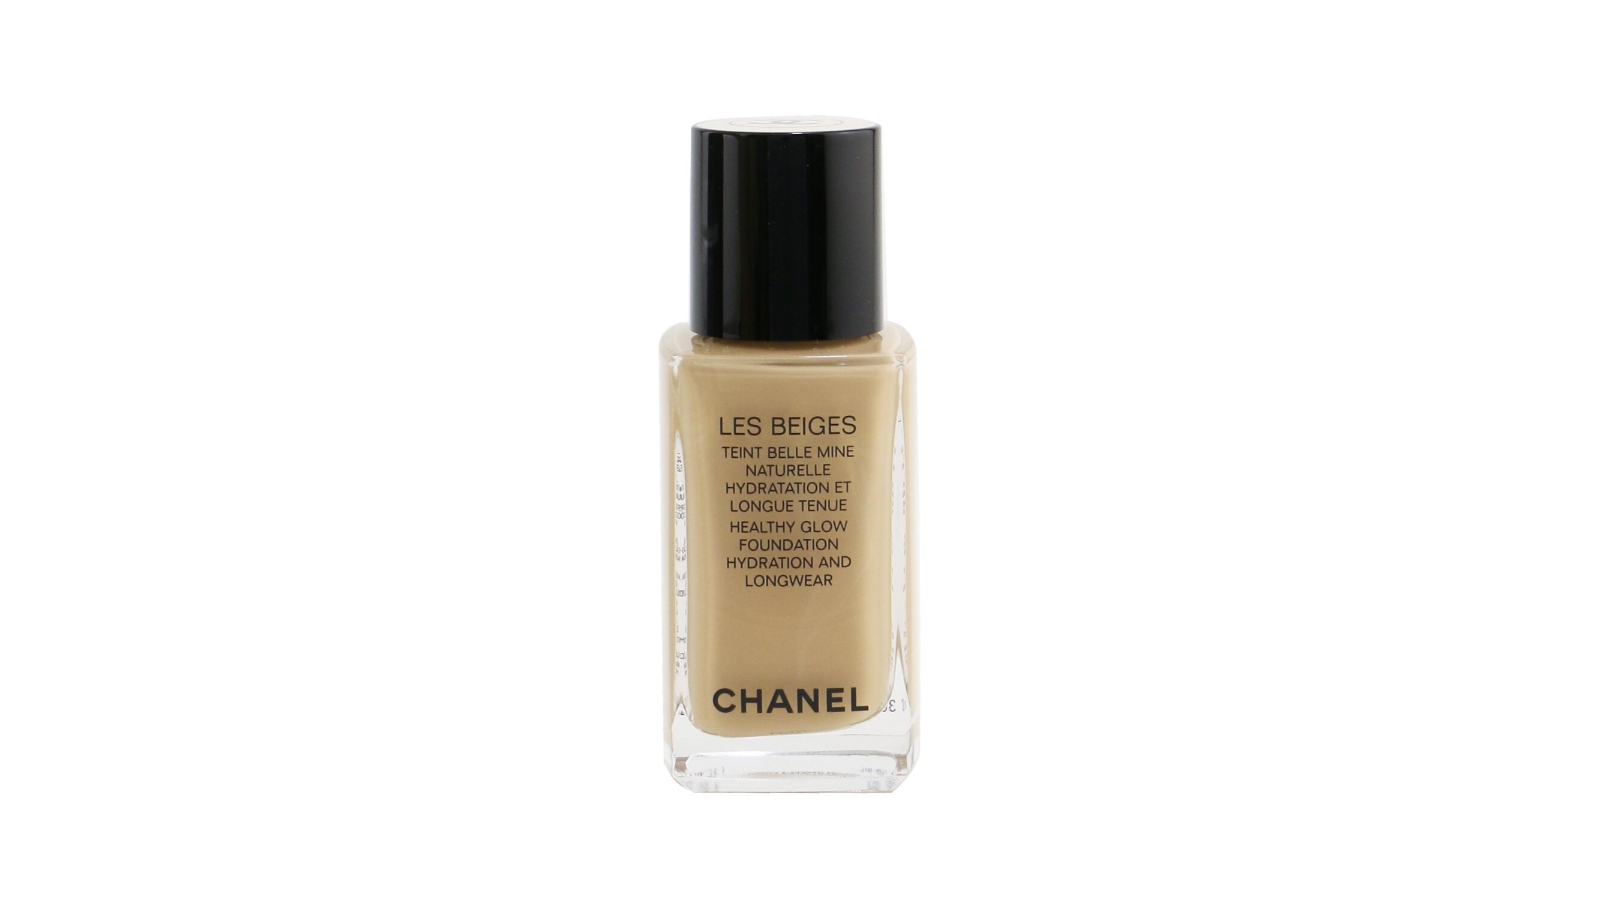 Chanel Les Beiges Healthy Glow Foundation Hydration and Longwear - B10